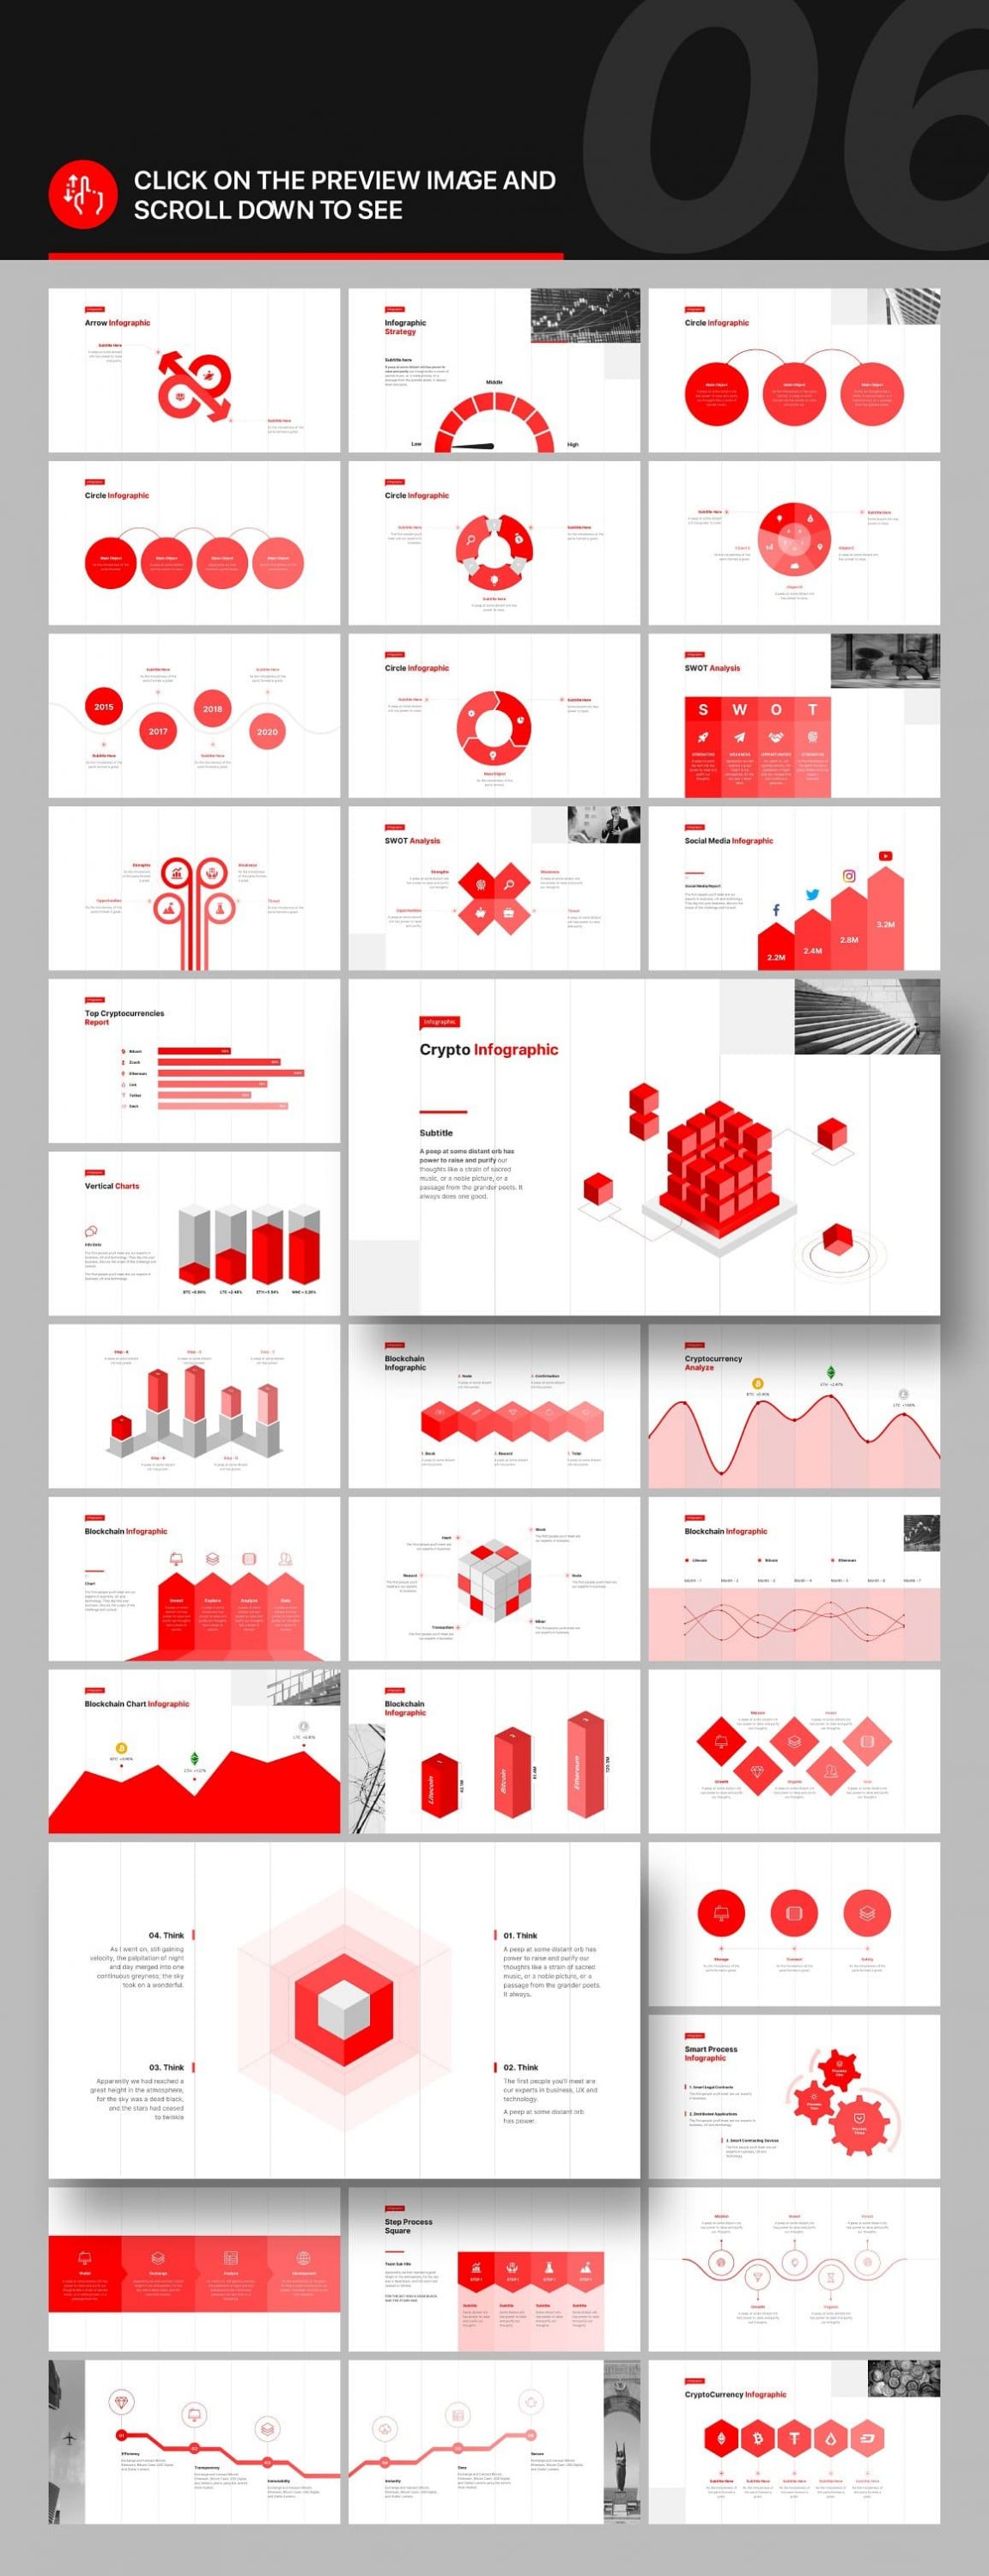 Infographic Bazz Presentation v2.1.